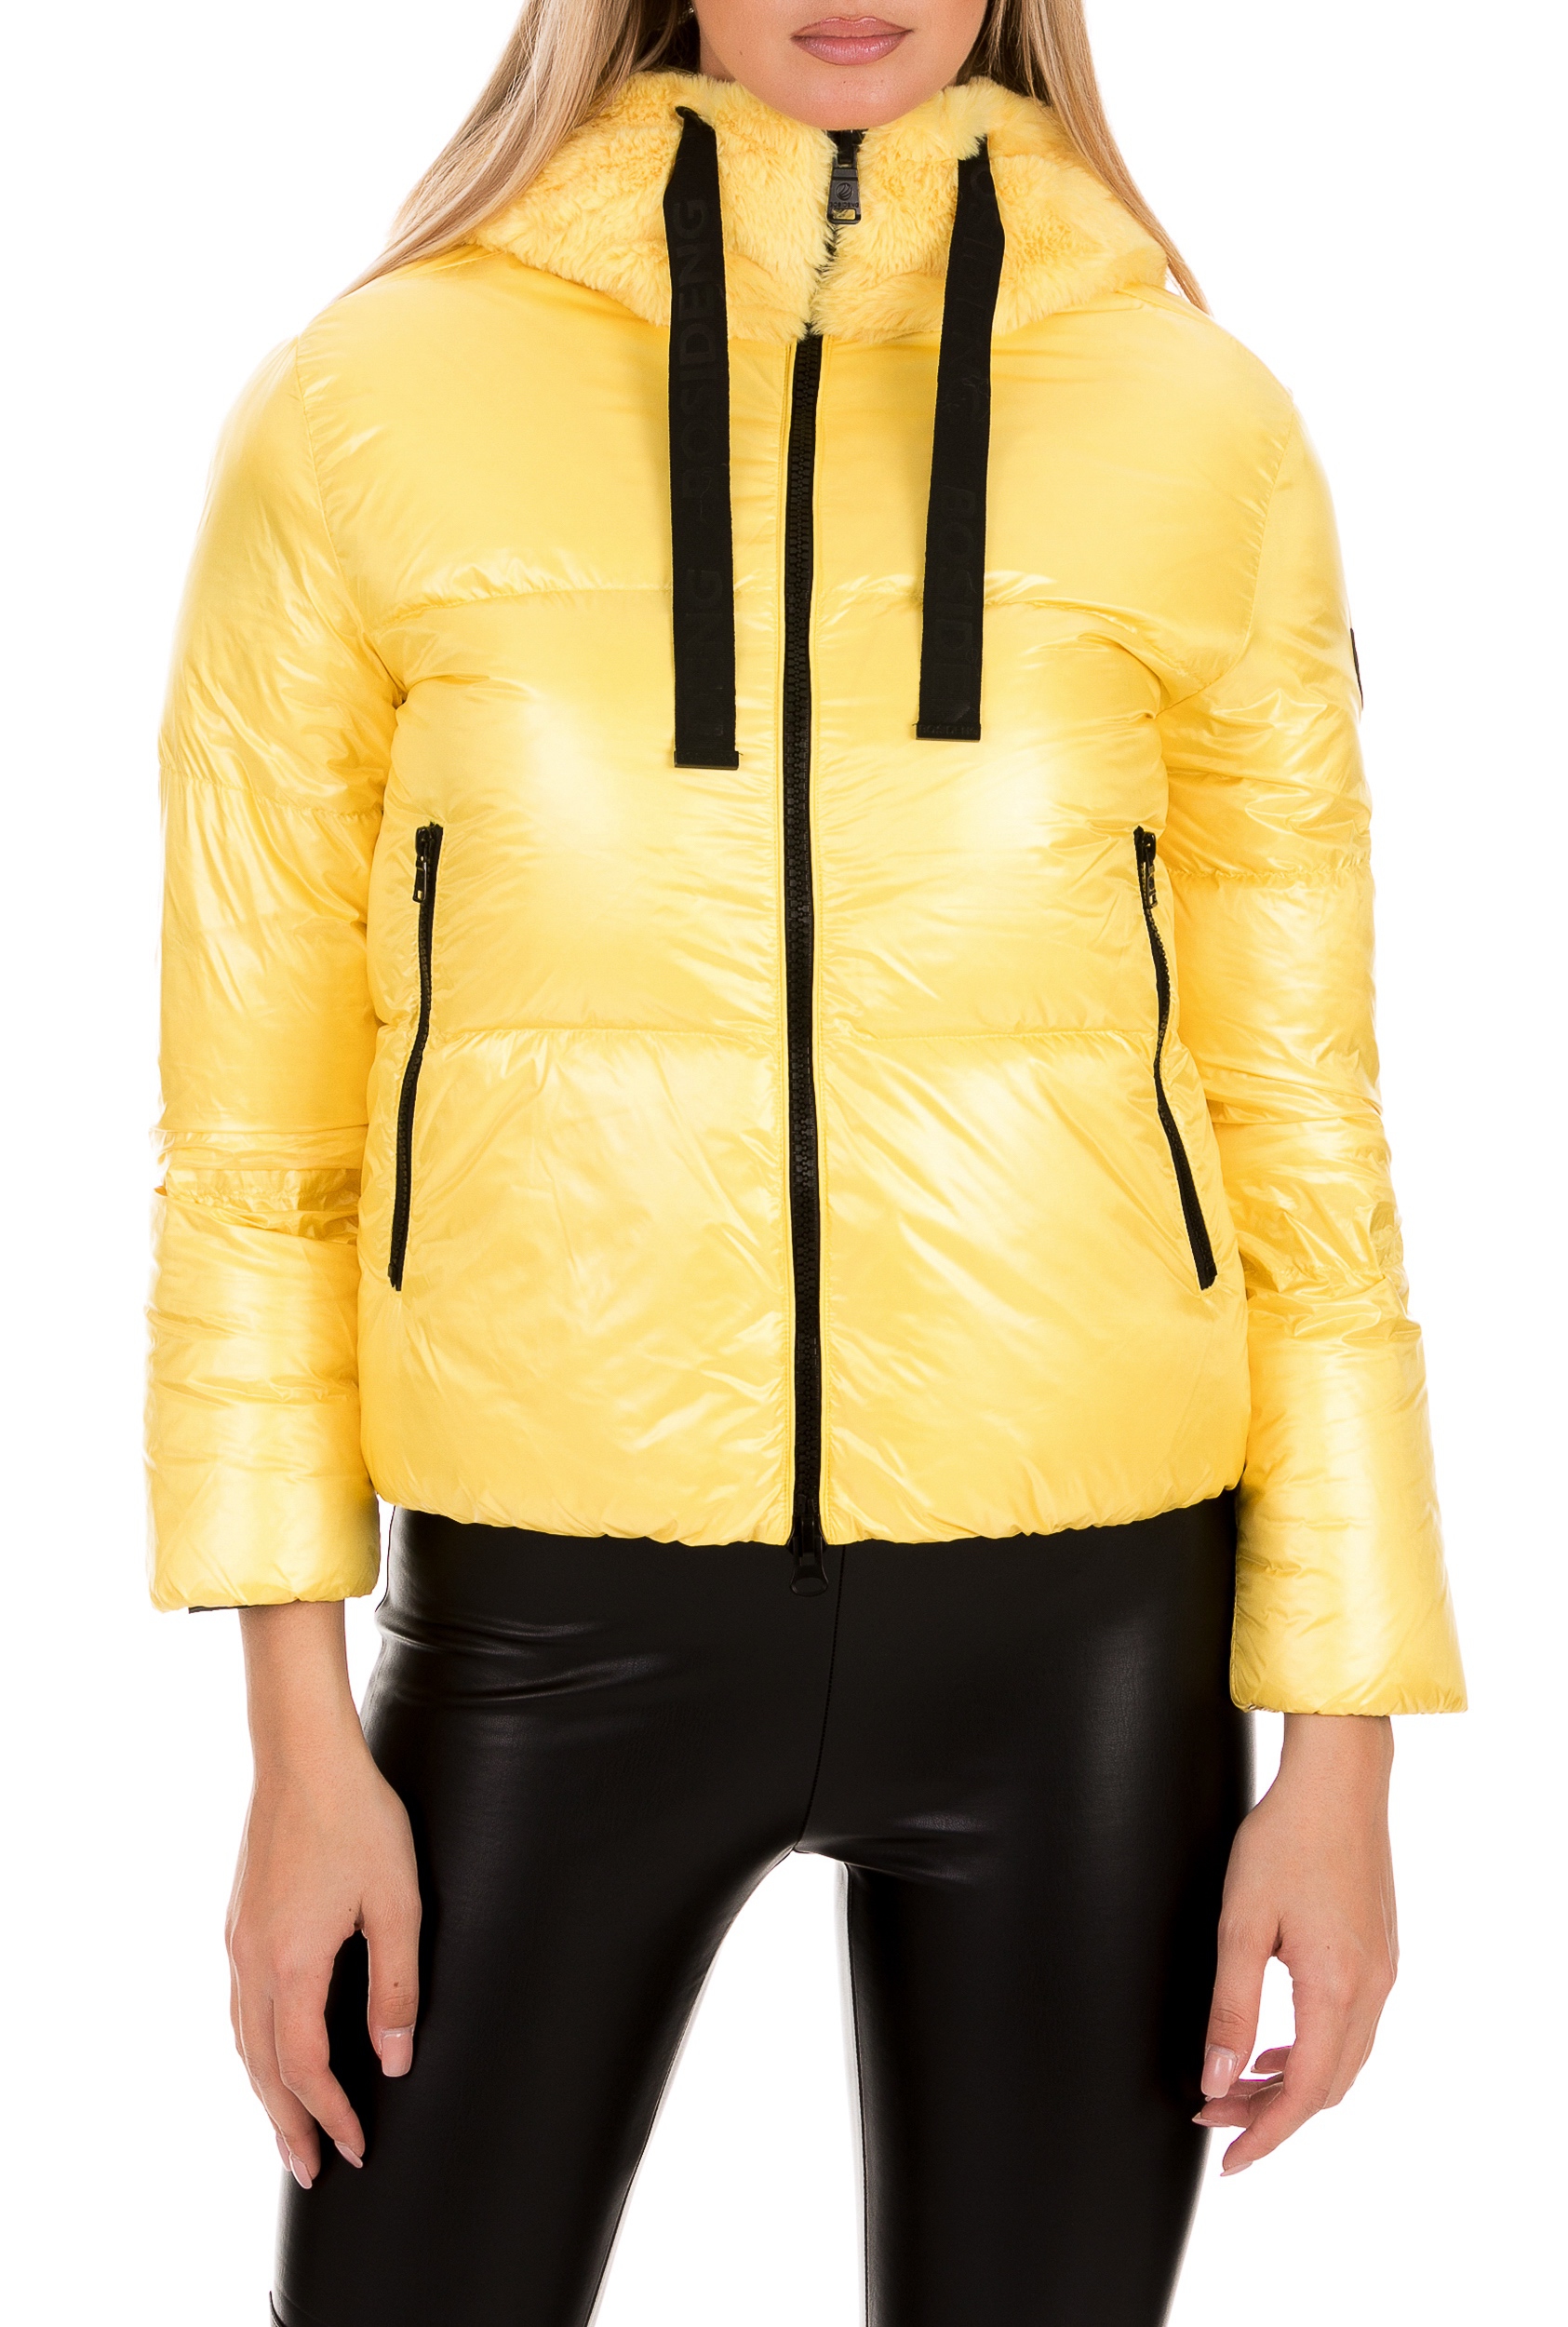 Γυναικεία/Ρούχα/Πανωφόρια/Μπουφάν BOSIDENG - Γυναικείο μπουφάν BOSIDENG κίτρινο